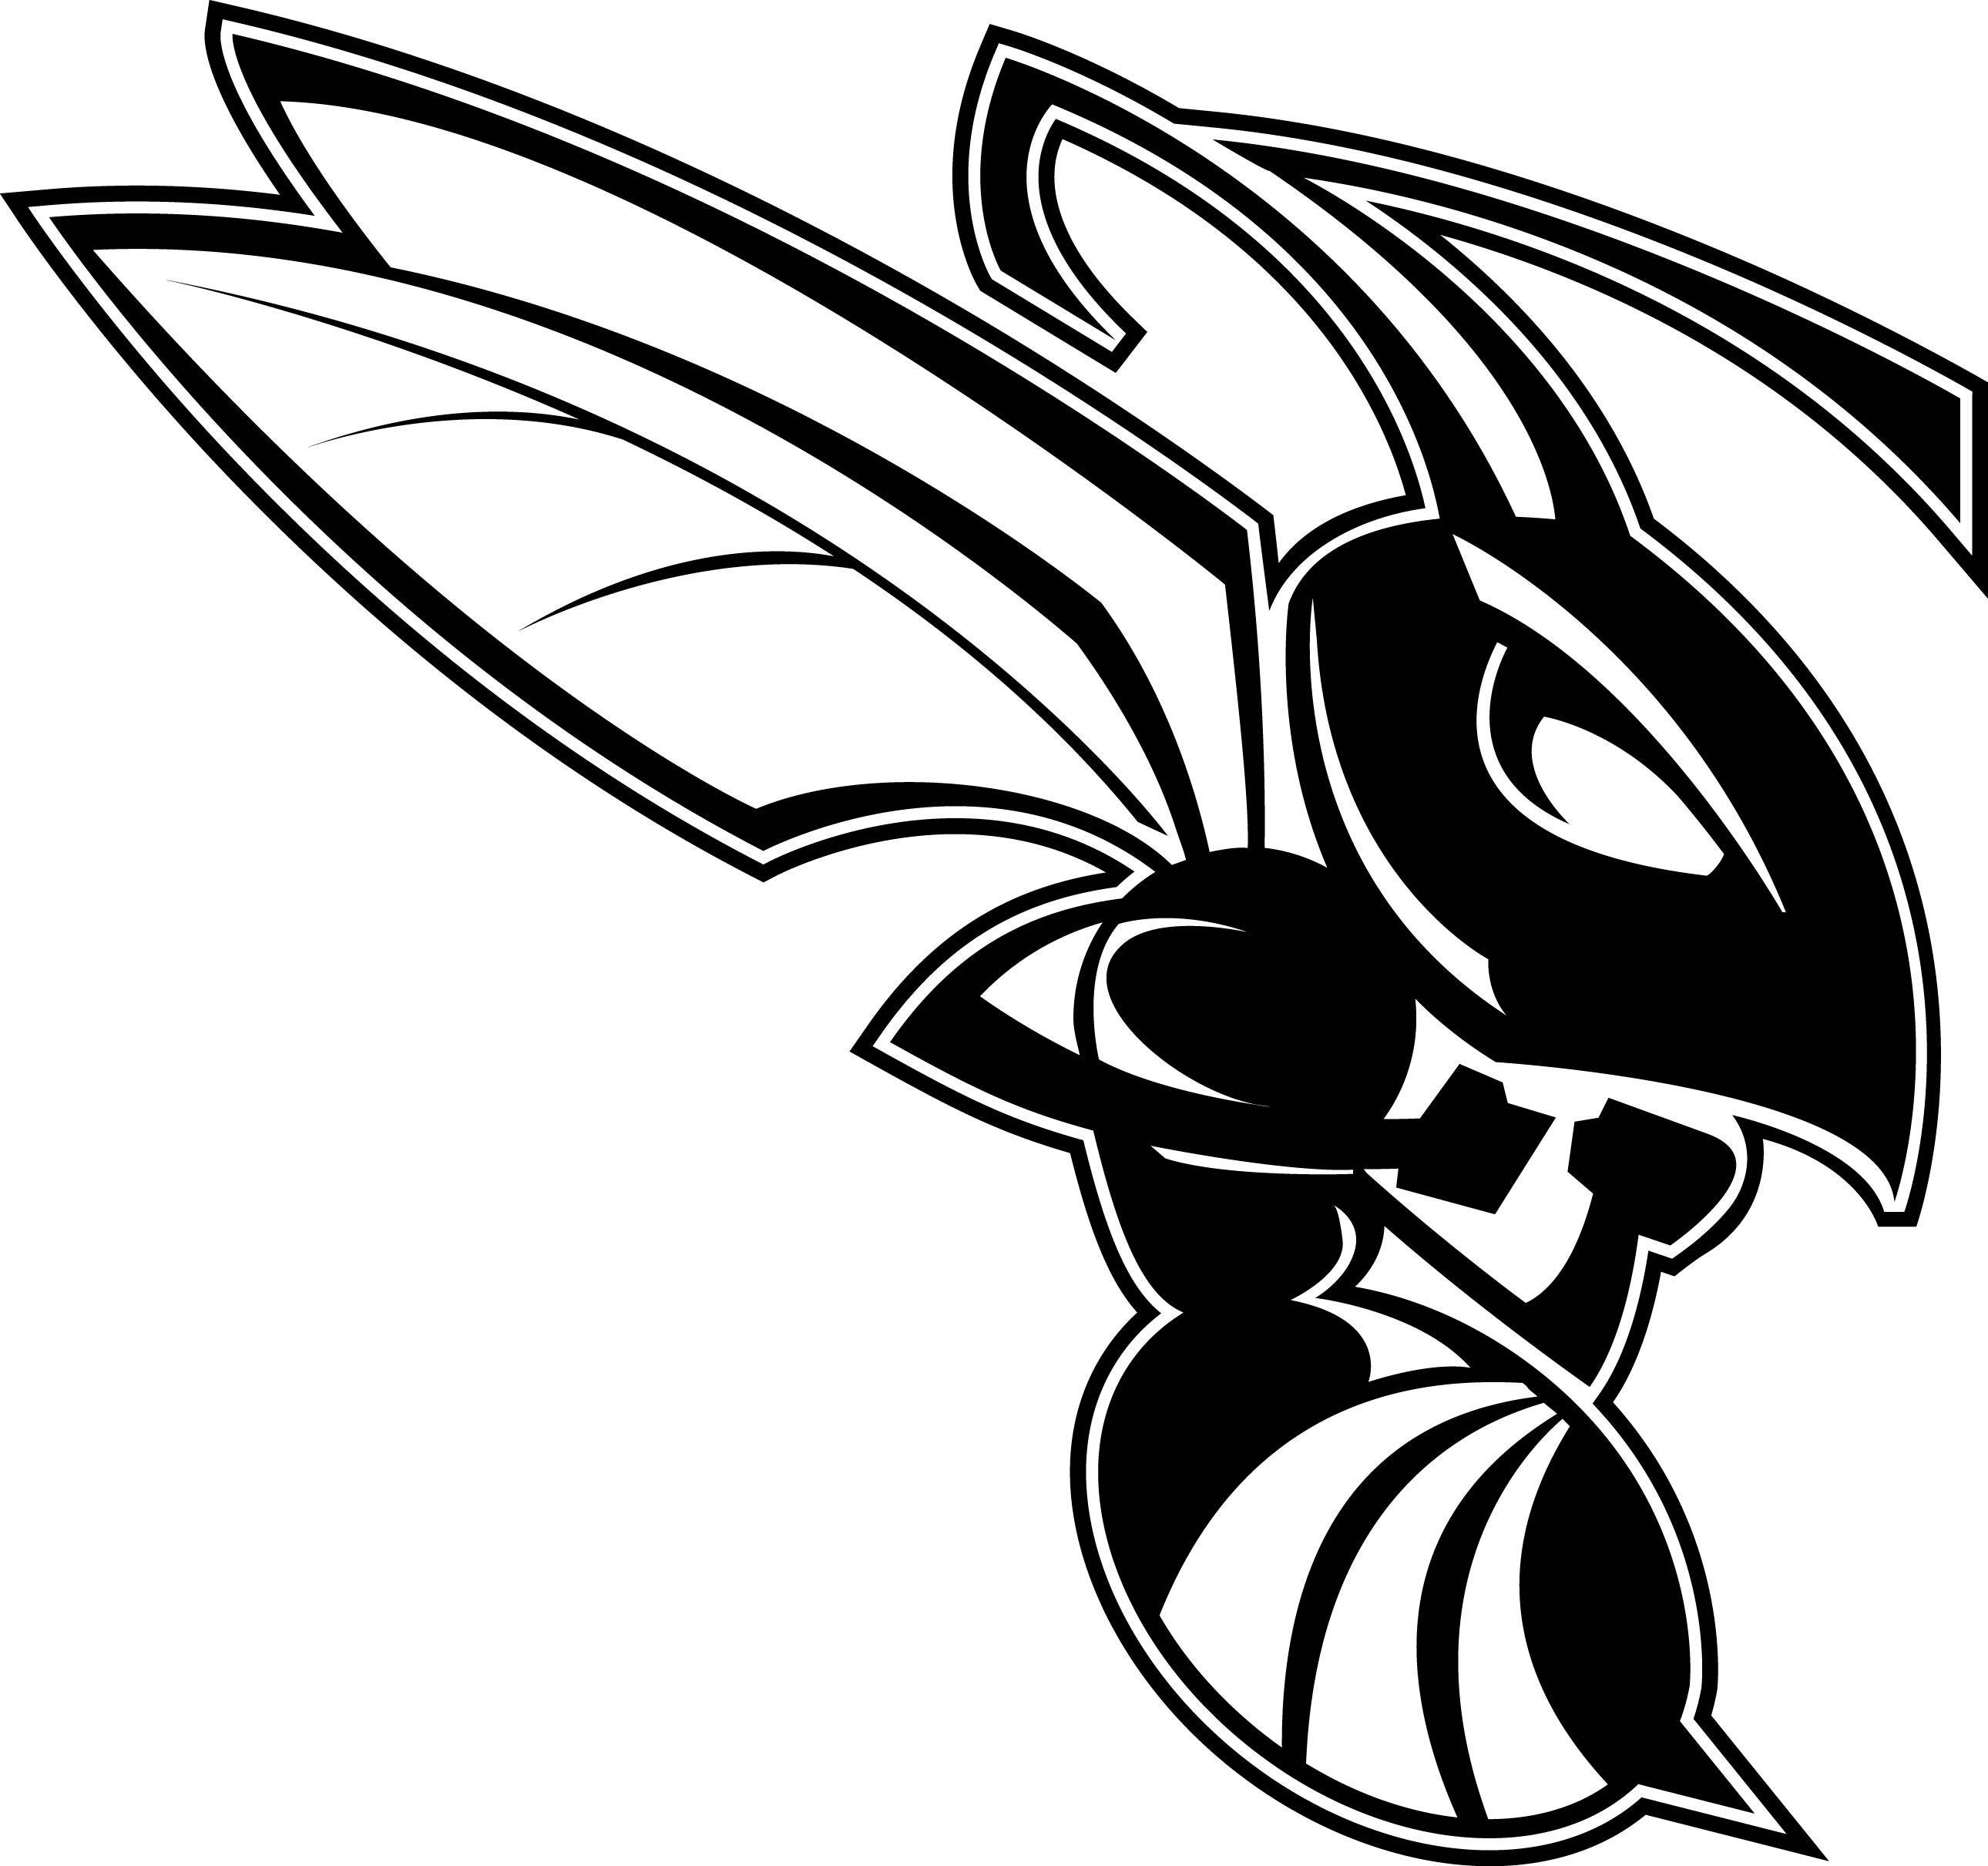 Hornet Logo - BrandK: Hornet Only Logo. Kalamazoo College